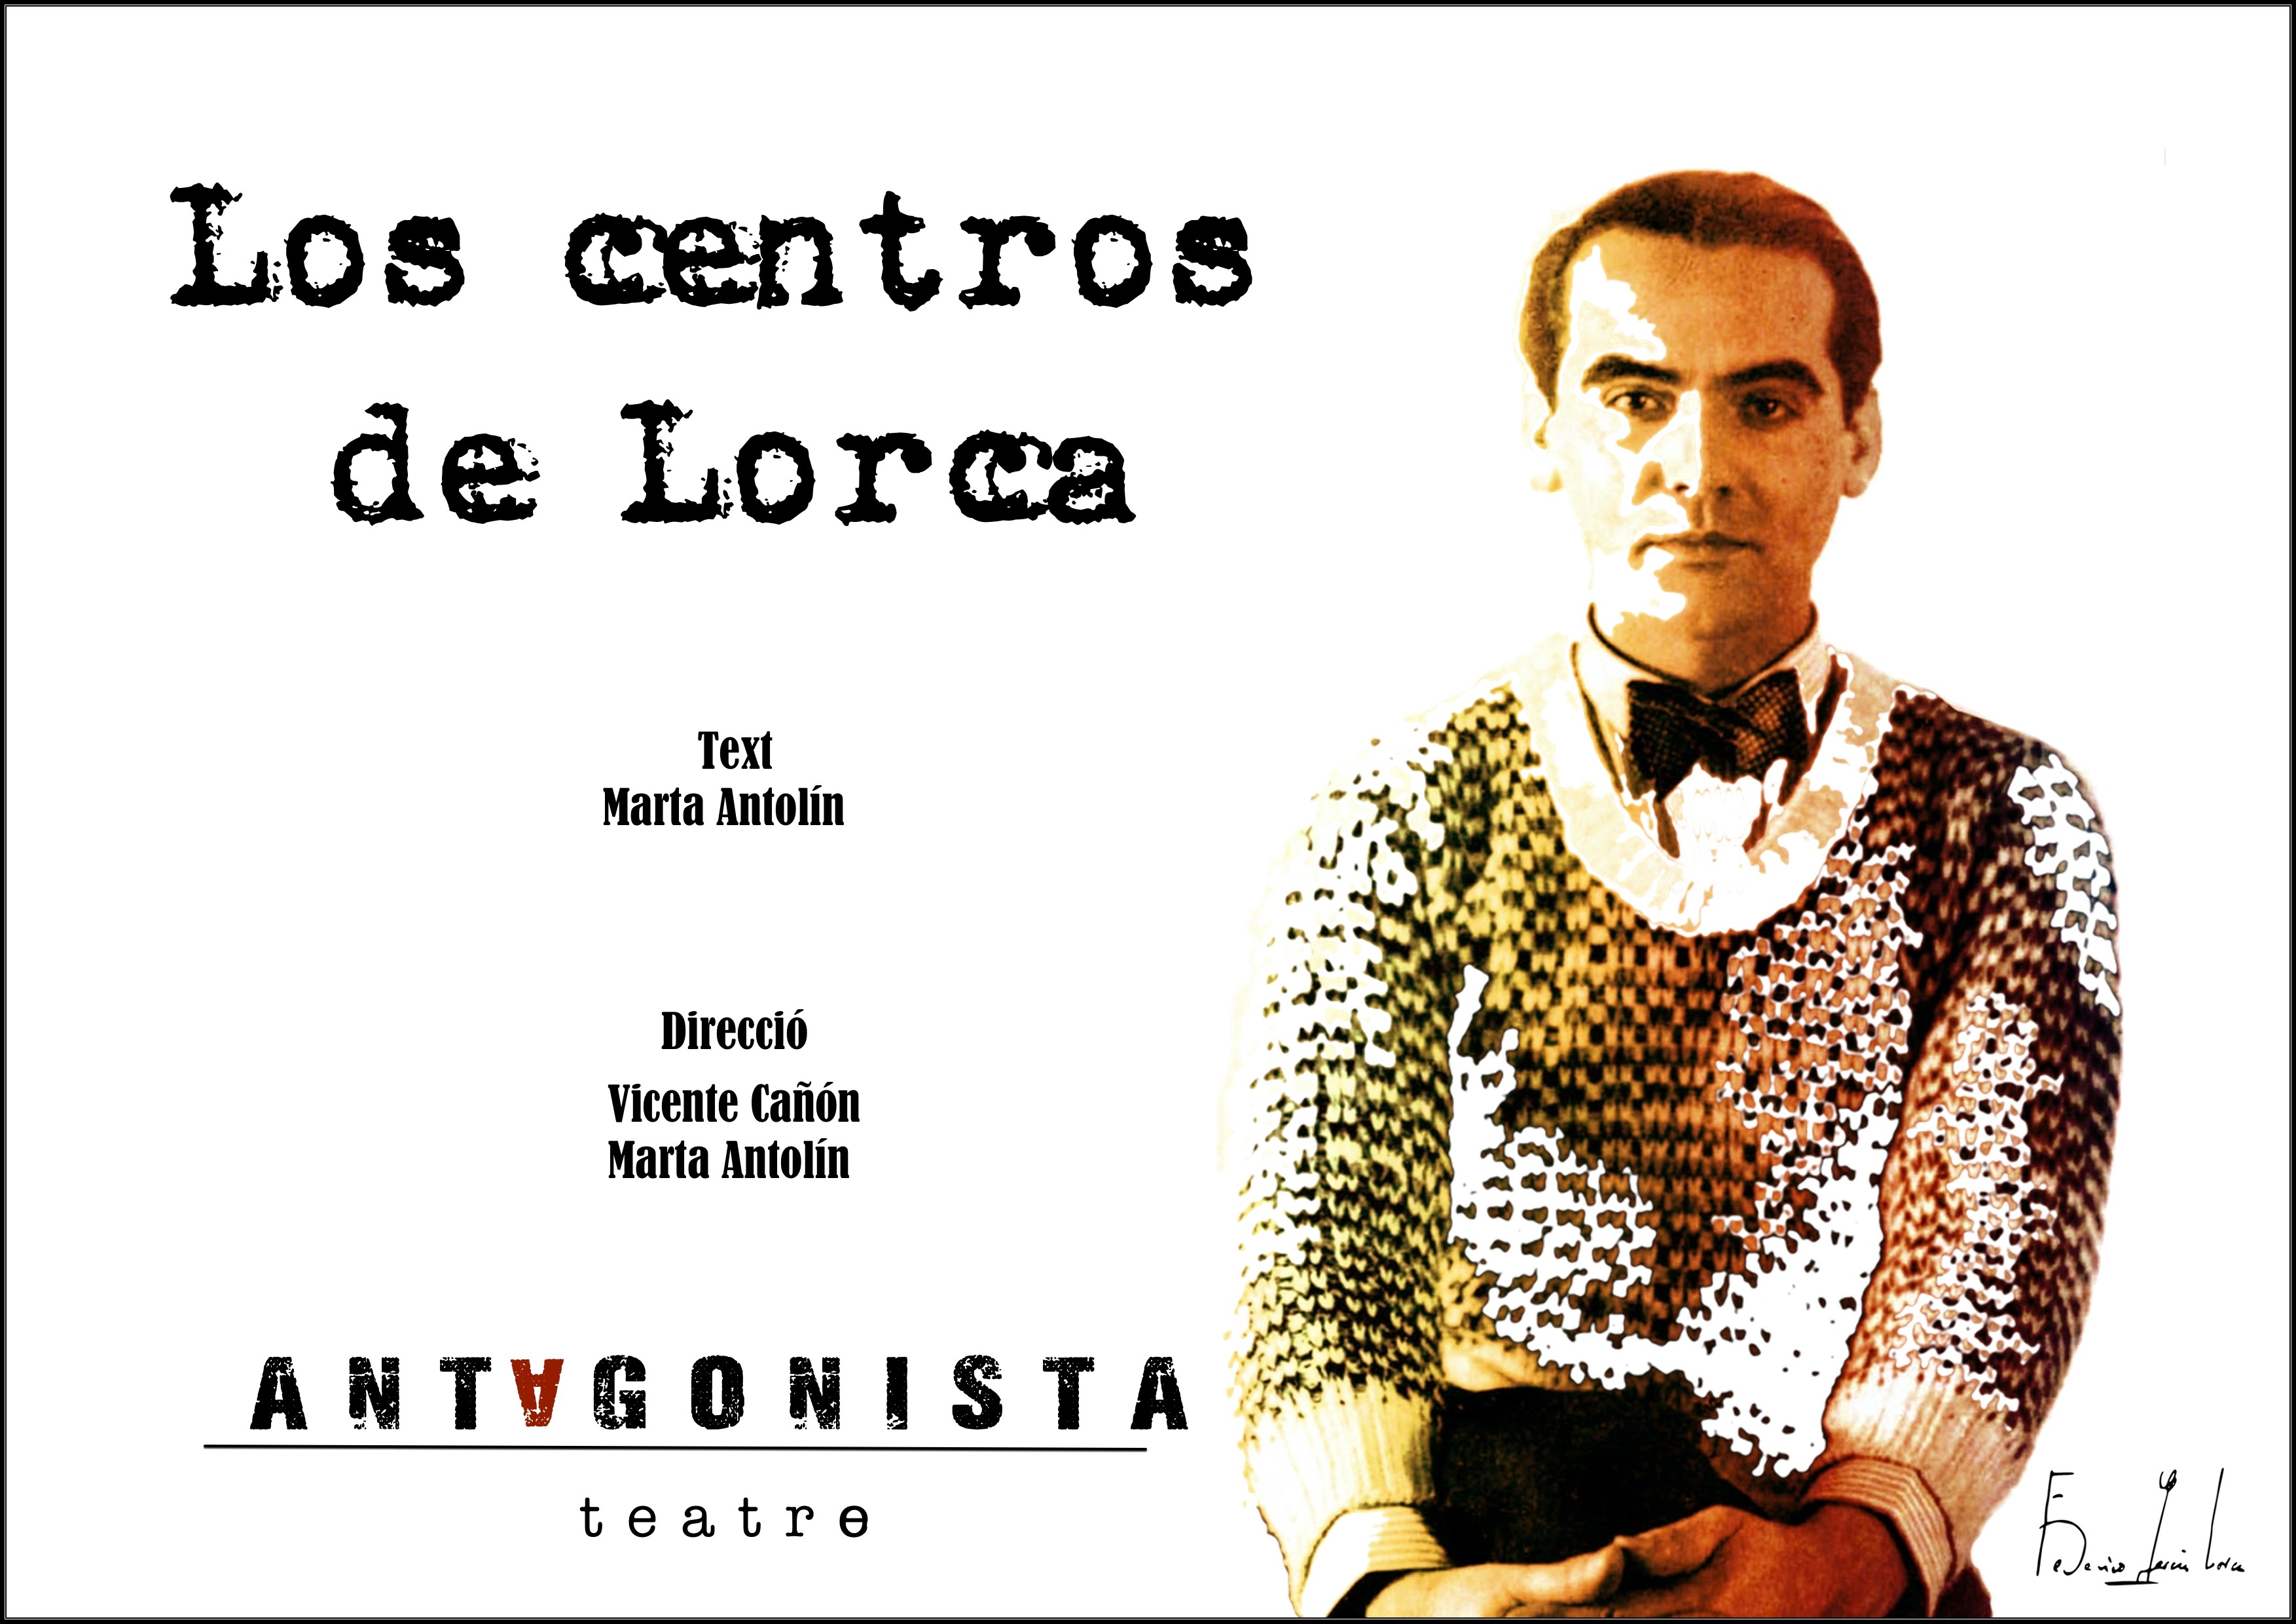 Los centros de Lorca